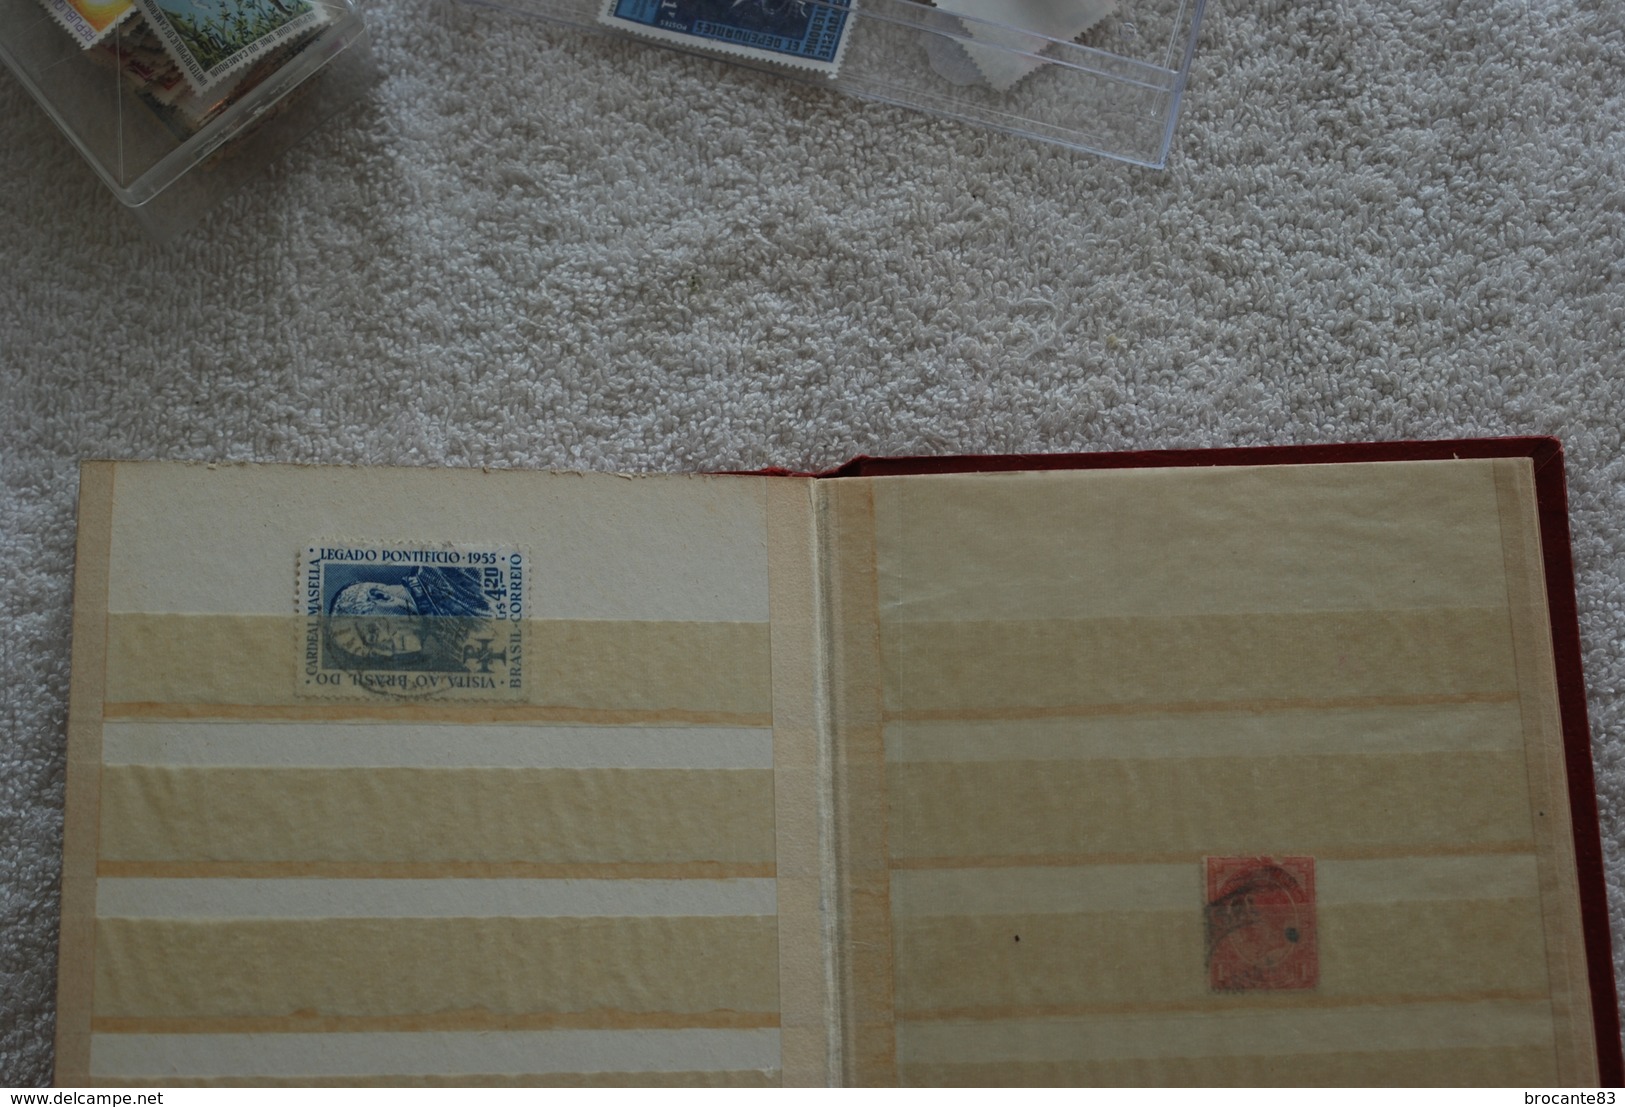 collection de timbre dans un petit album plus deux boites